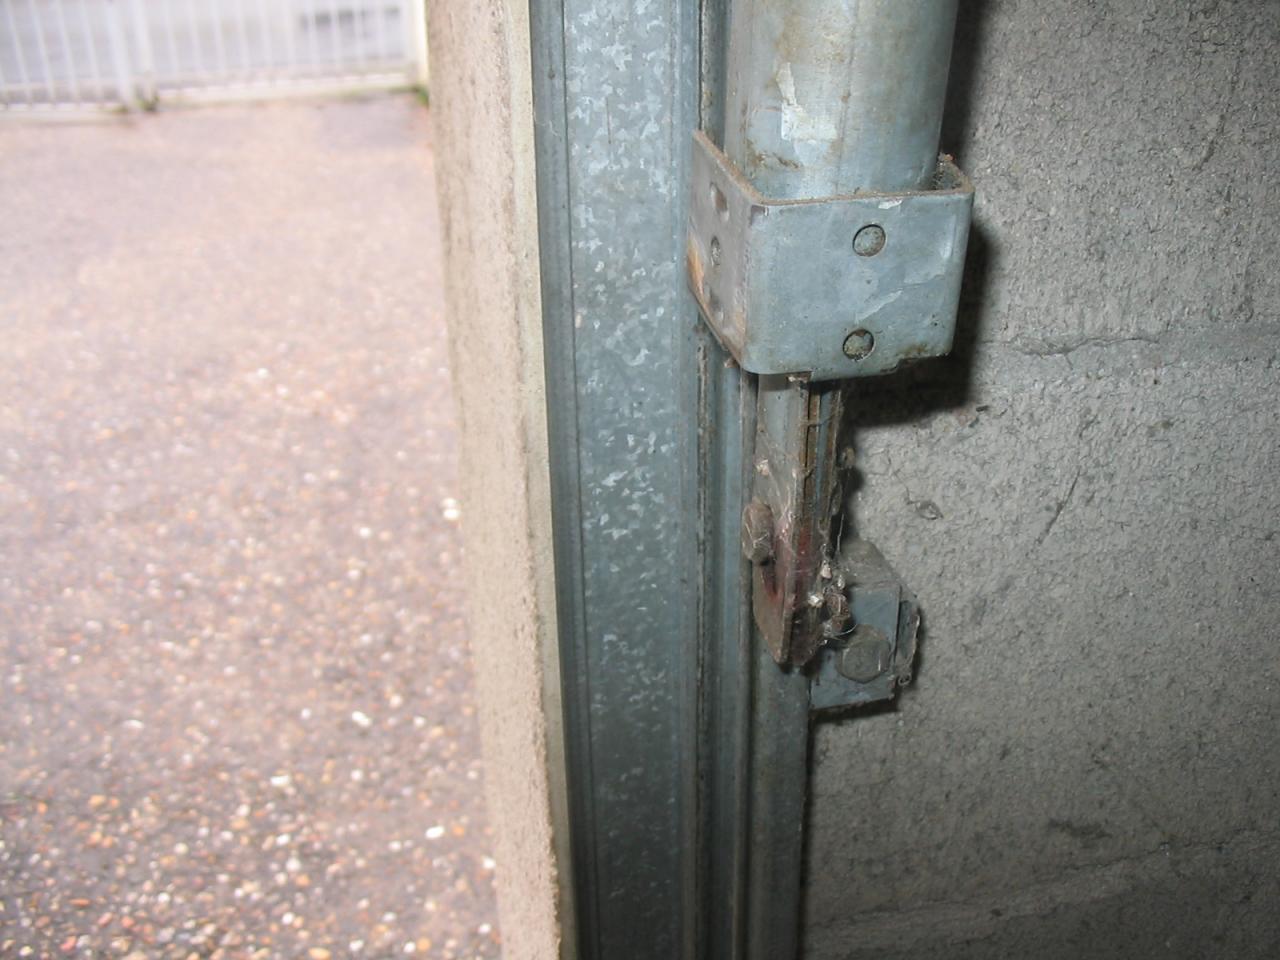 Comment changer le ressort d'une porte de garage basculante ?